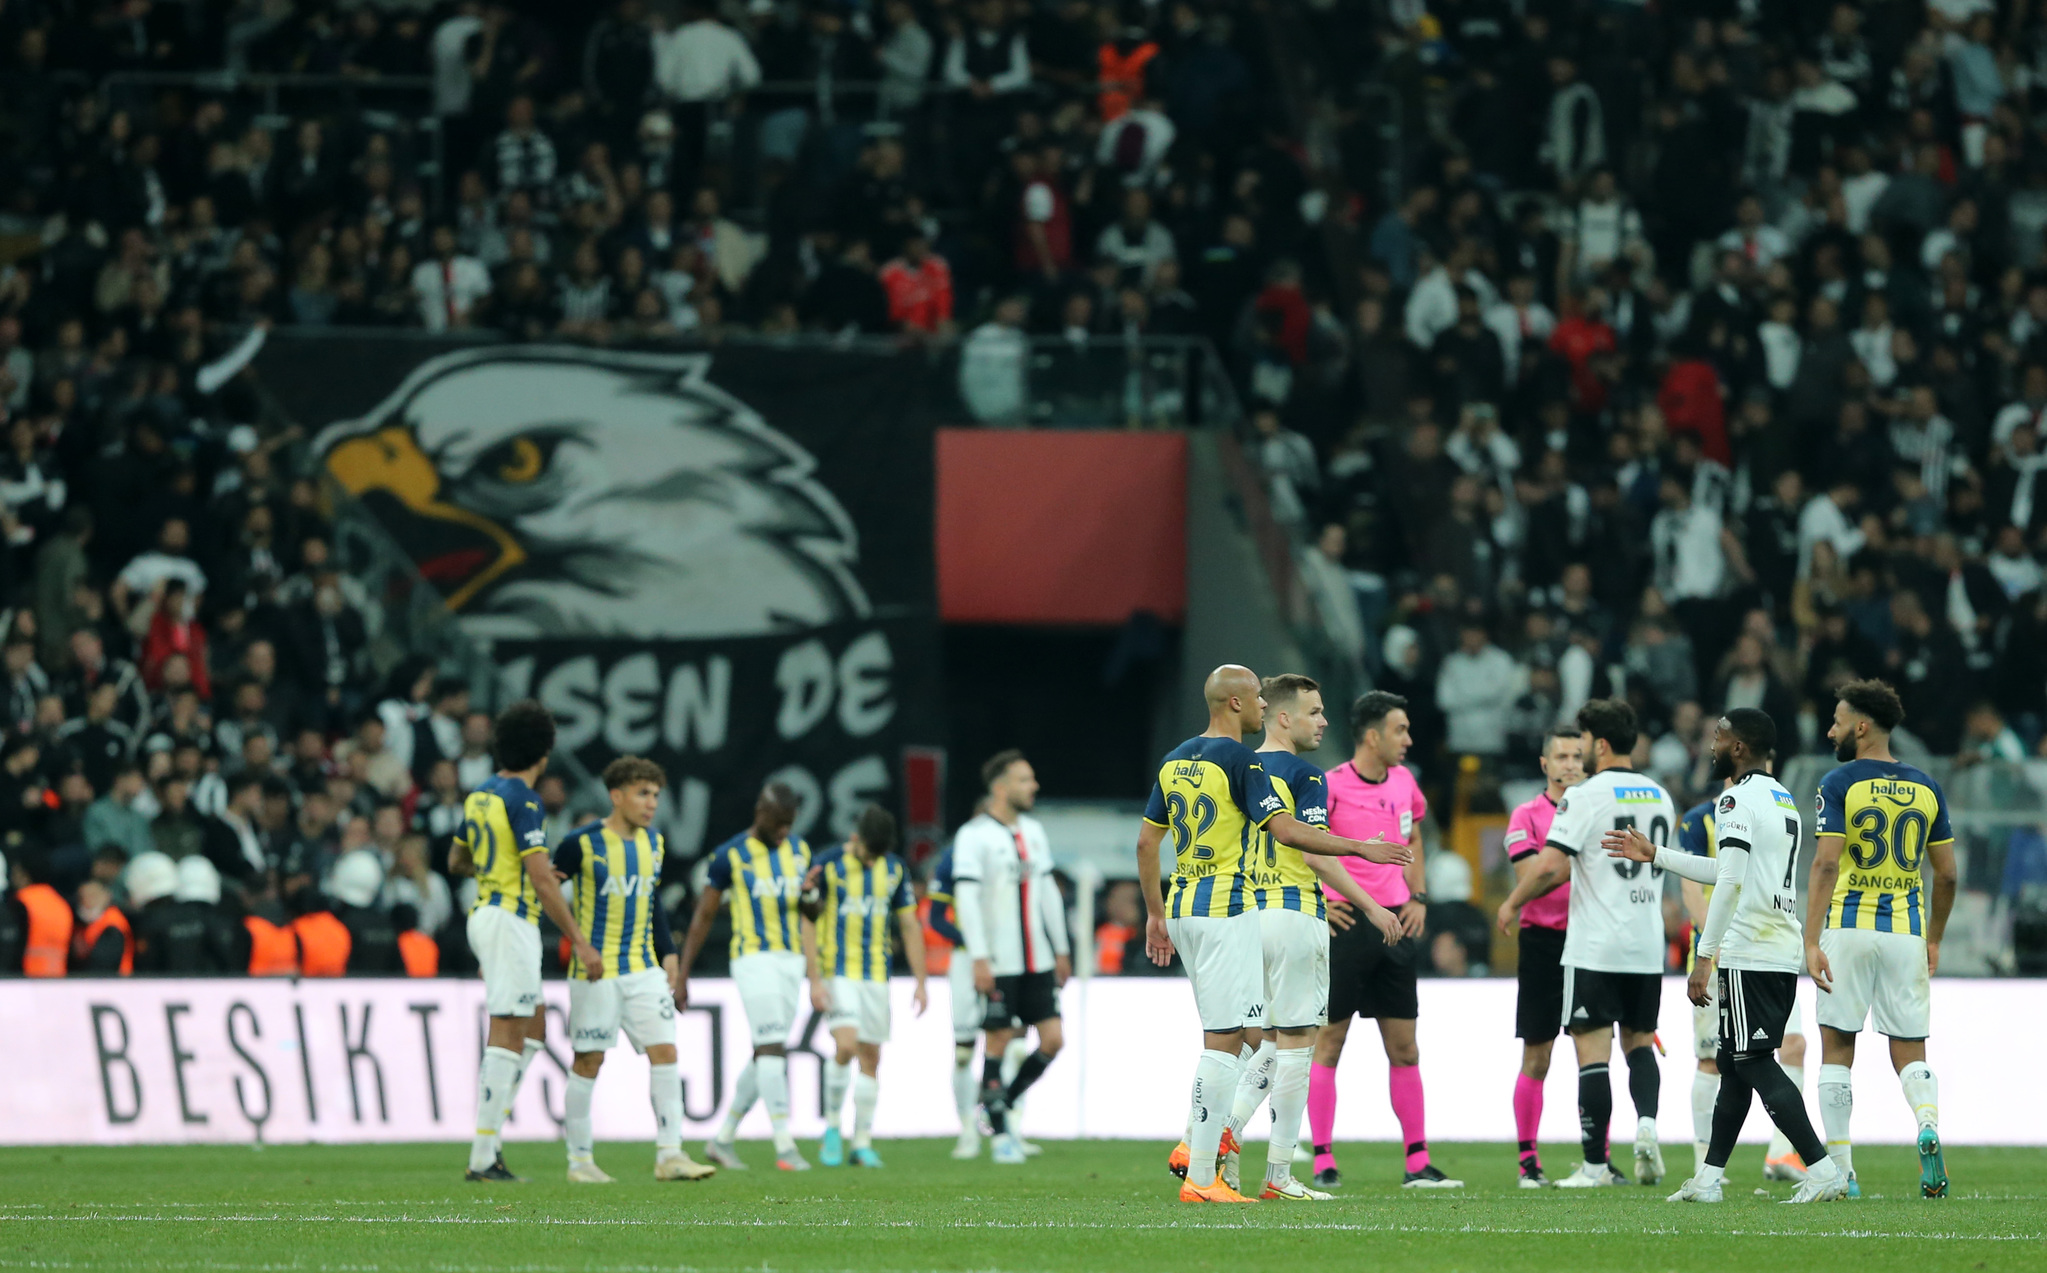 TRANSFER HABERLERİ | Fenerbahçe’de gözler tekrardan Eran Zahavi’de!